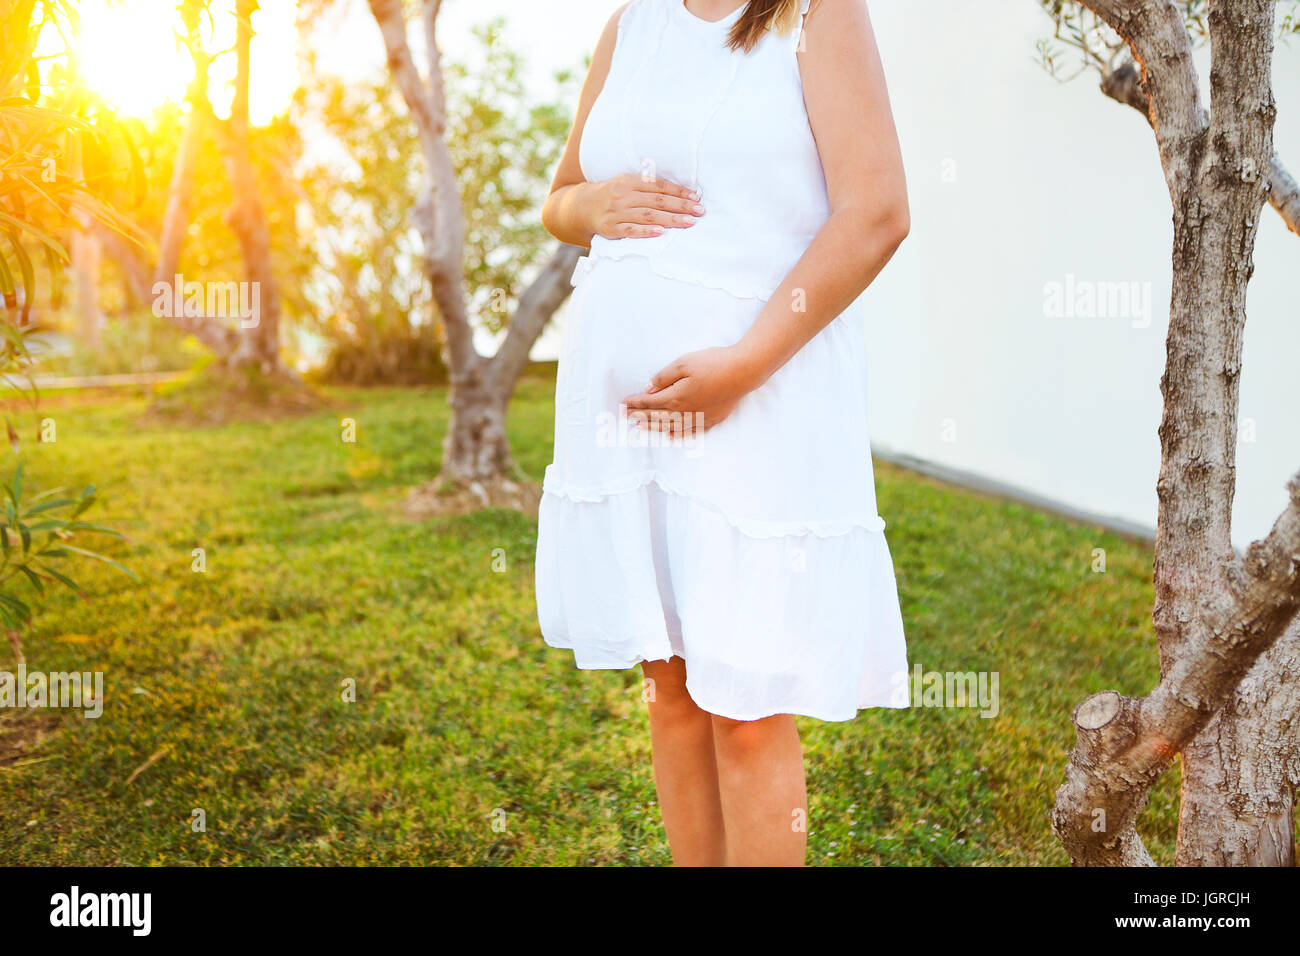 Bild der schwangeren Bauch mit berühren die Hände im freien Closeup Stockfoto